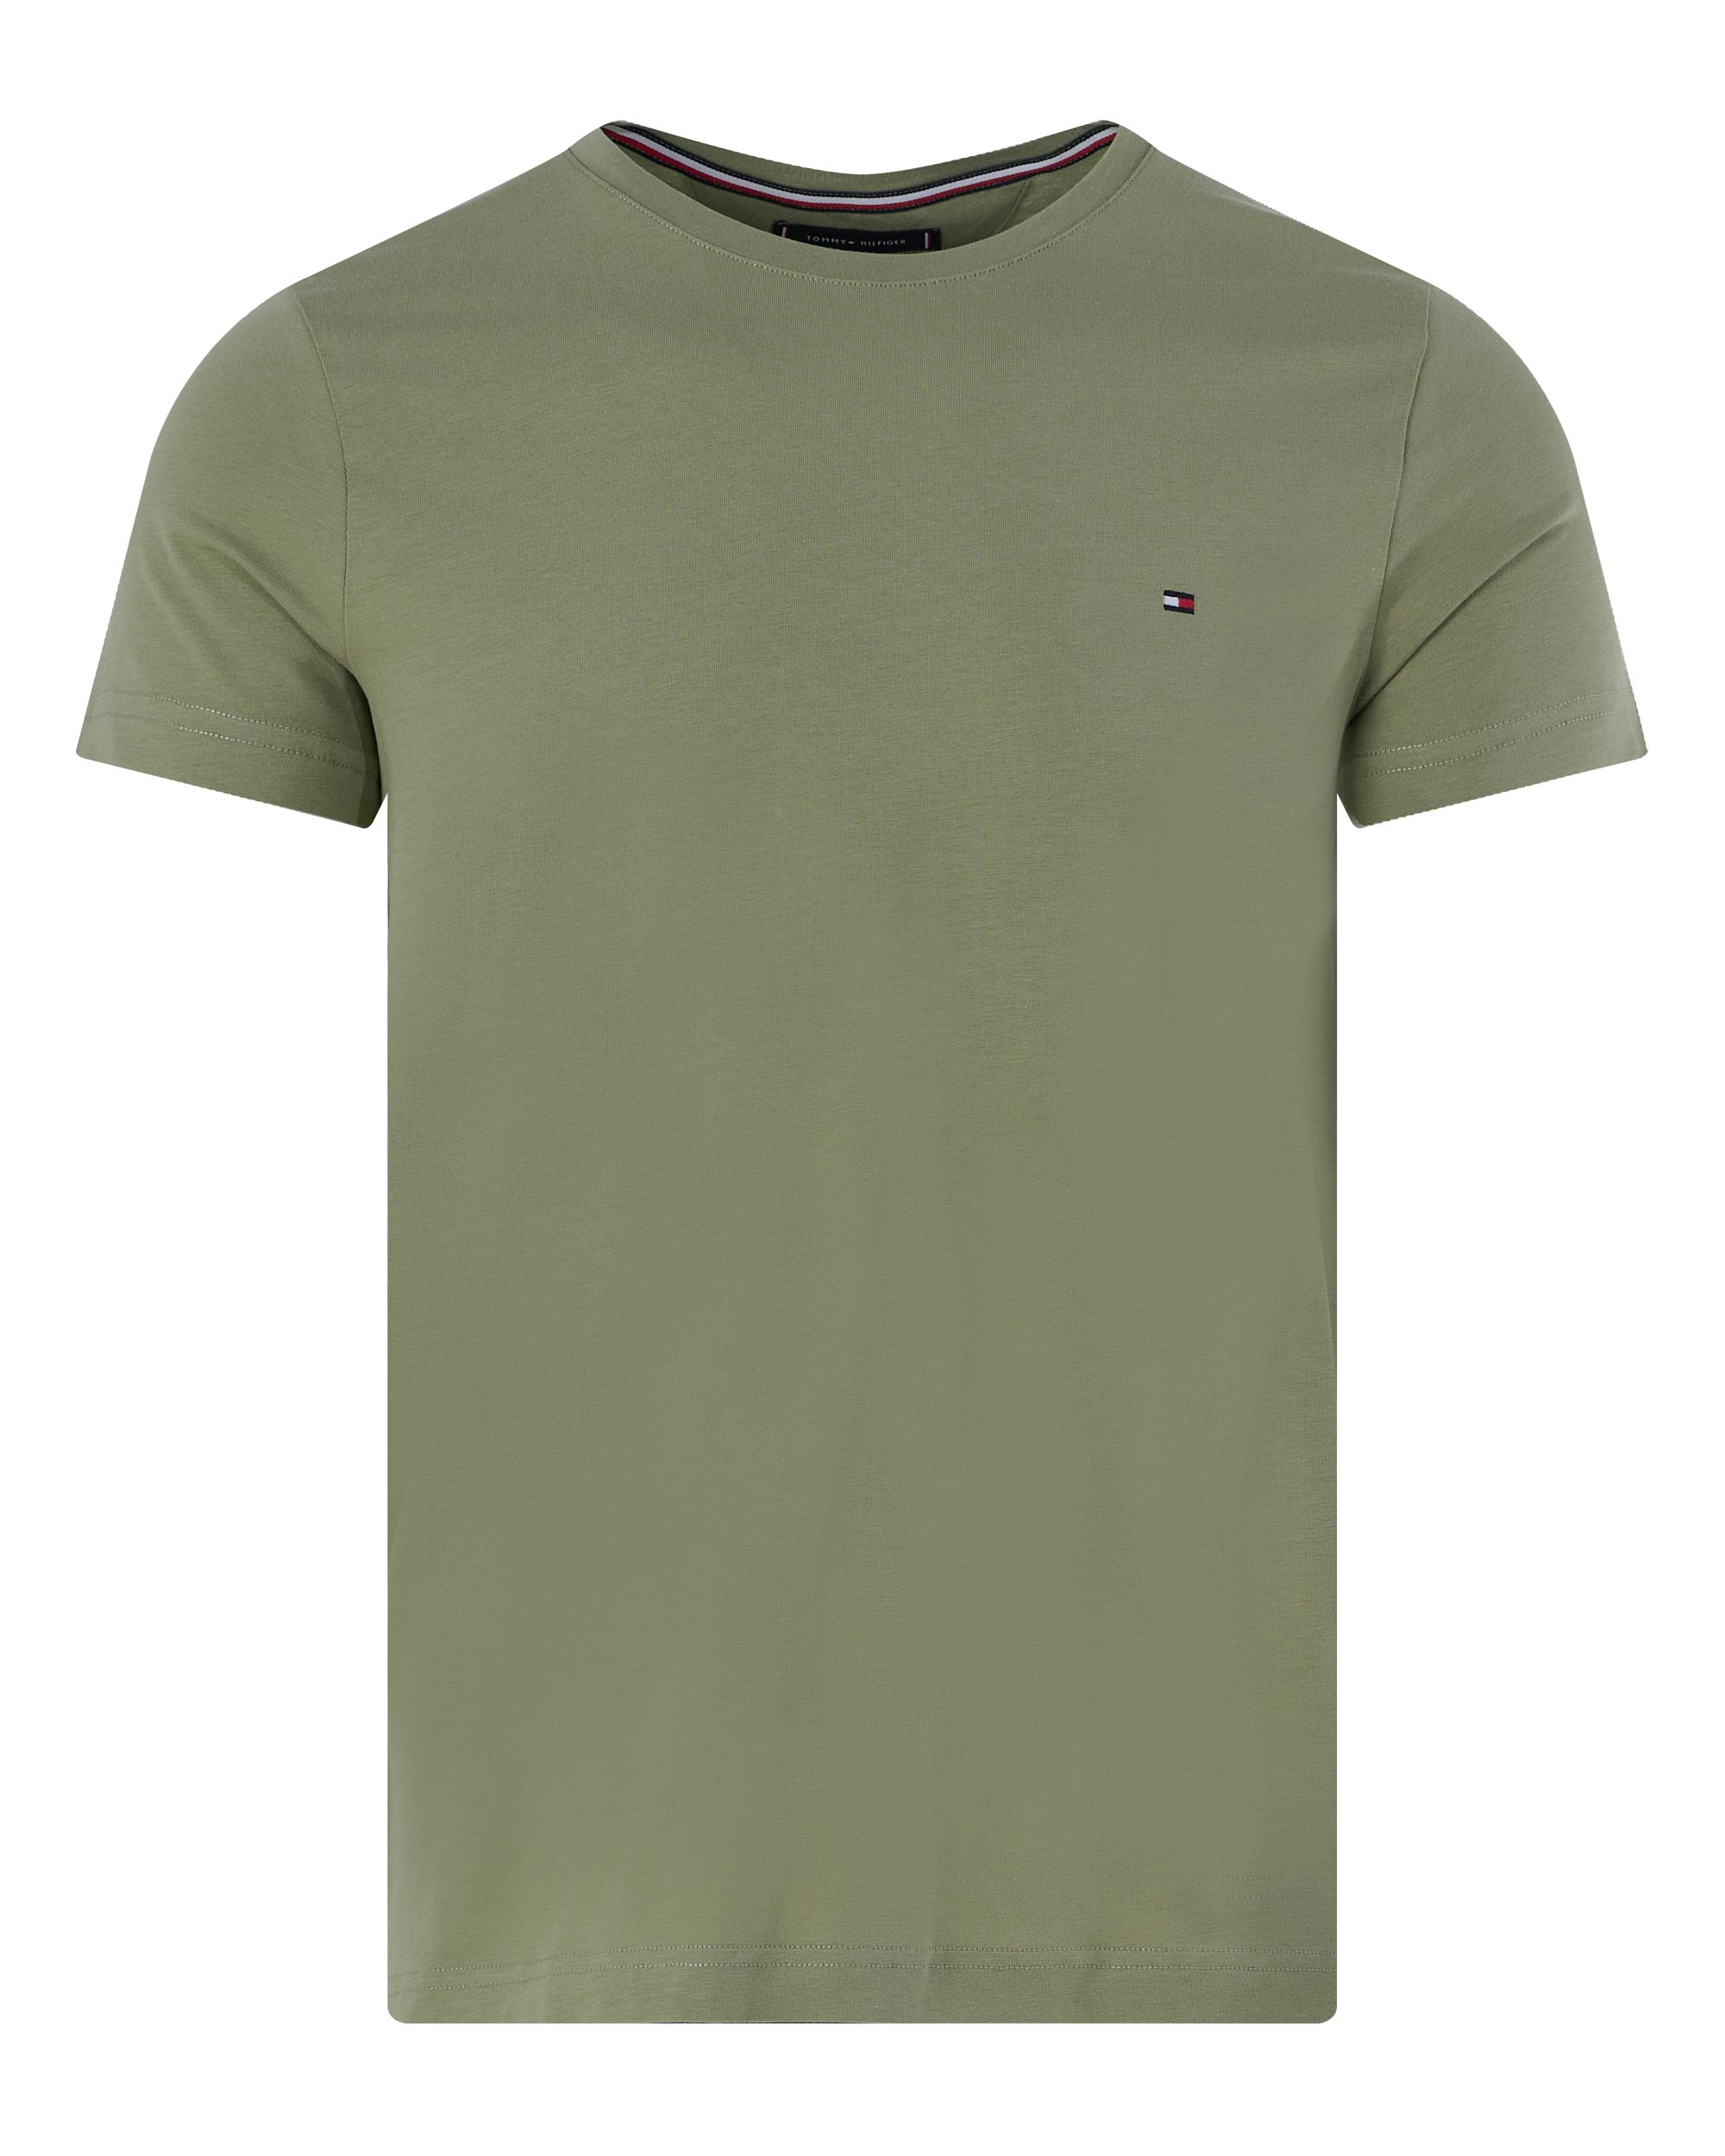 Tommy Hilfiger Menswear T-shirt KM Groen 094693-001-L